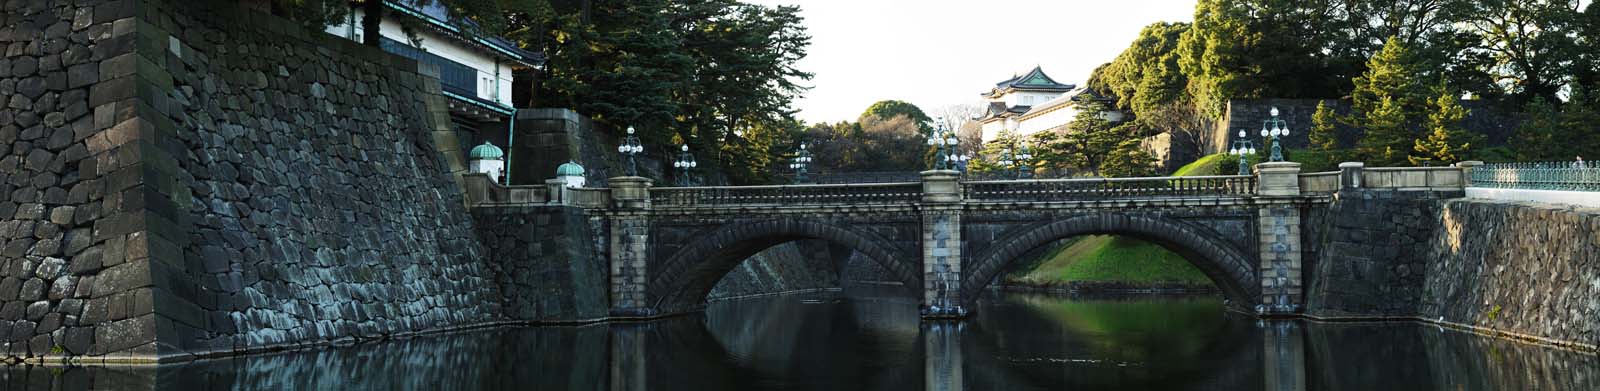 fotografia, material, livra, ajardine, imagine, proveja fotografia,Palcio imperial ponte de Niju-bashi, fosso, palcio, O imperador, Edo-jo Castelo